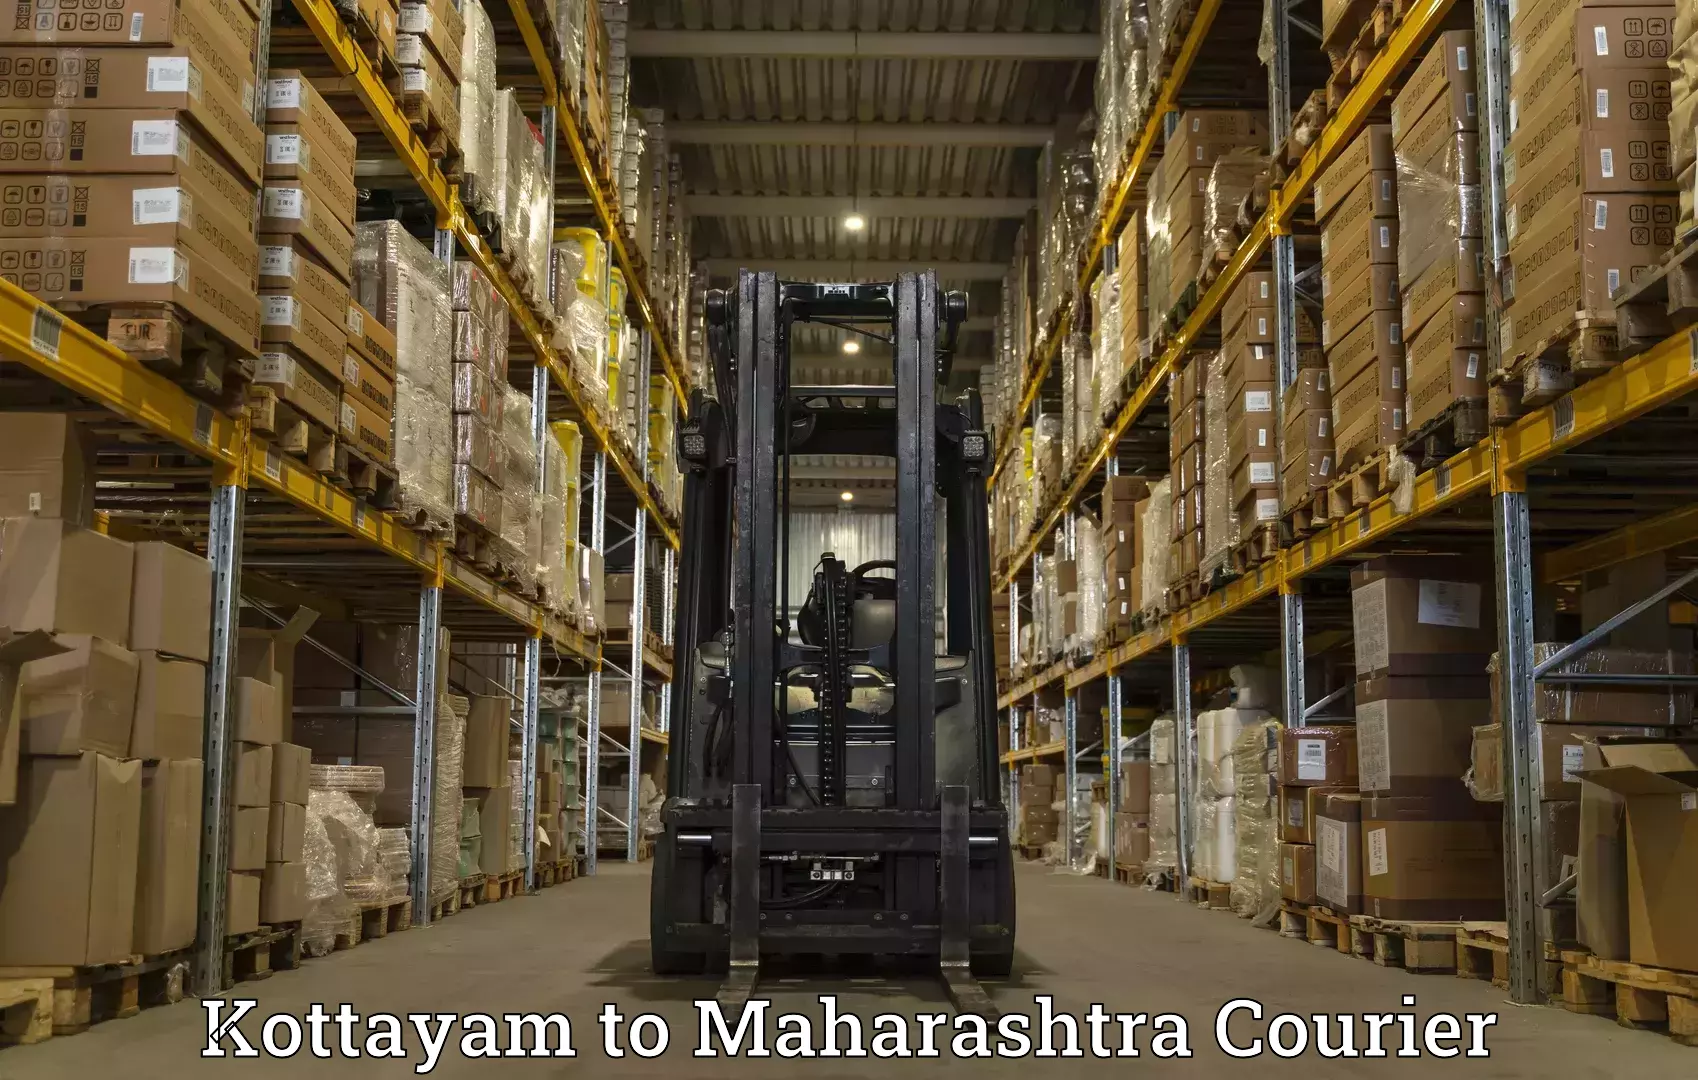 Seamless shipping experience in Kottayam to Maharashtra